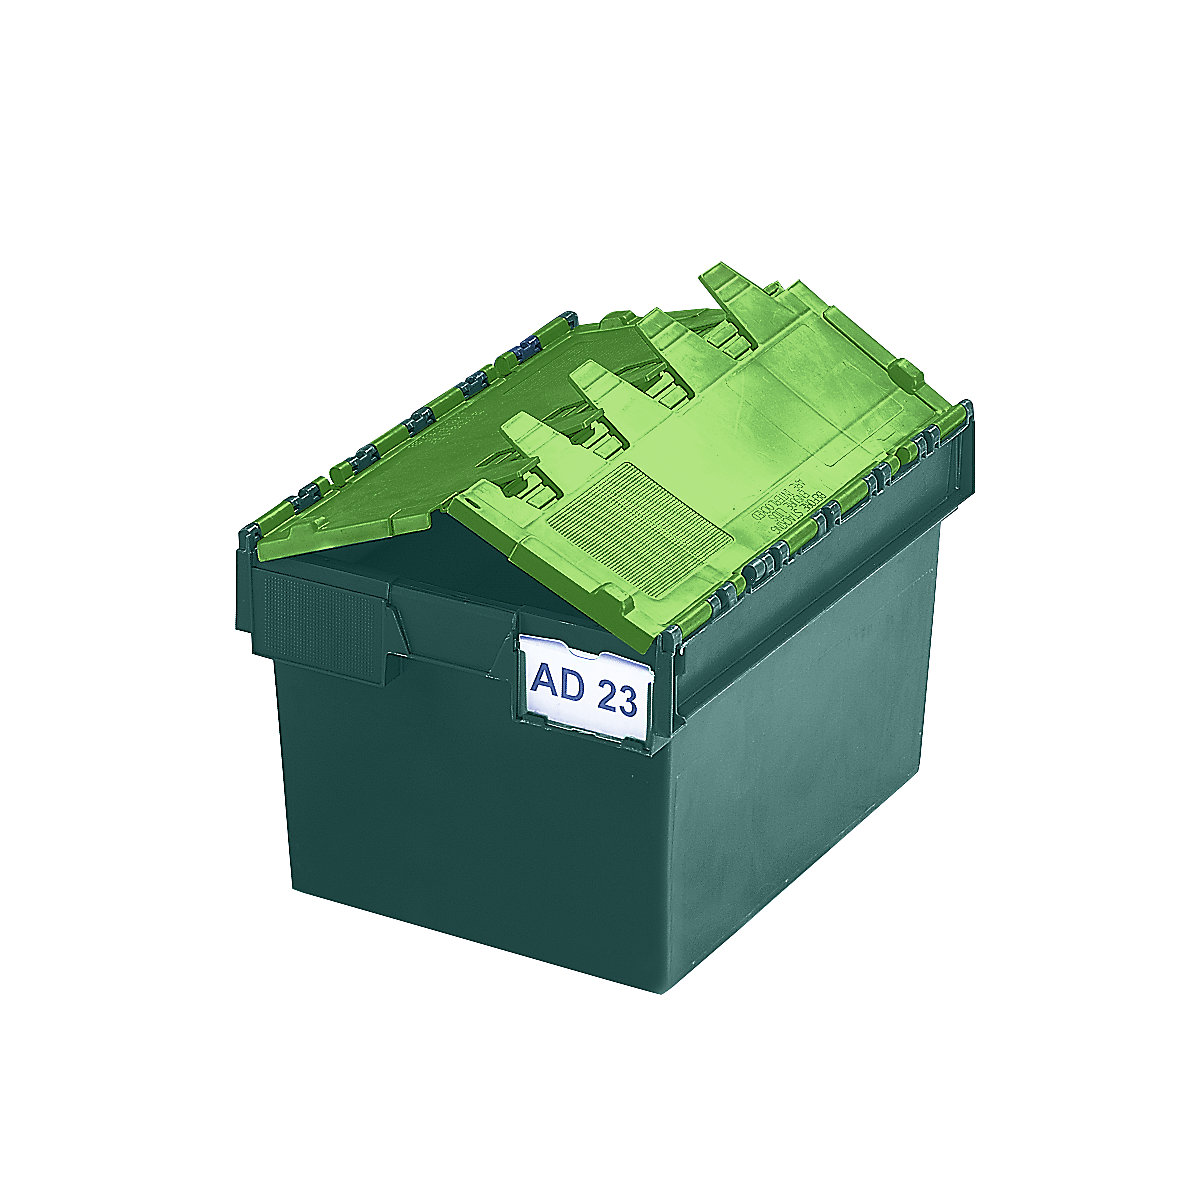 Recipiente empilhável e retornável com tampa articulada, volume 54 litros, CxLxA 600 x 400 x 320 mm, verde